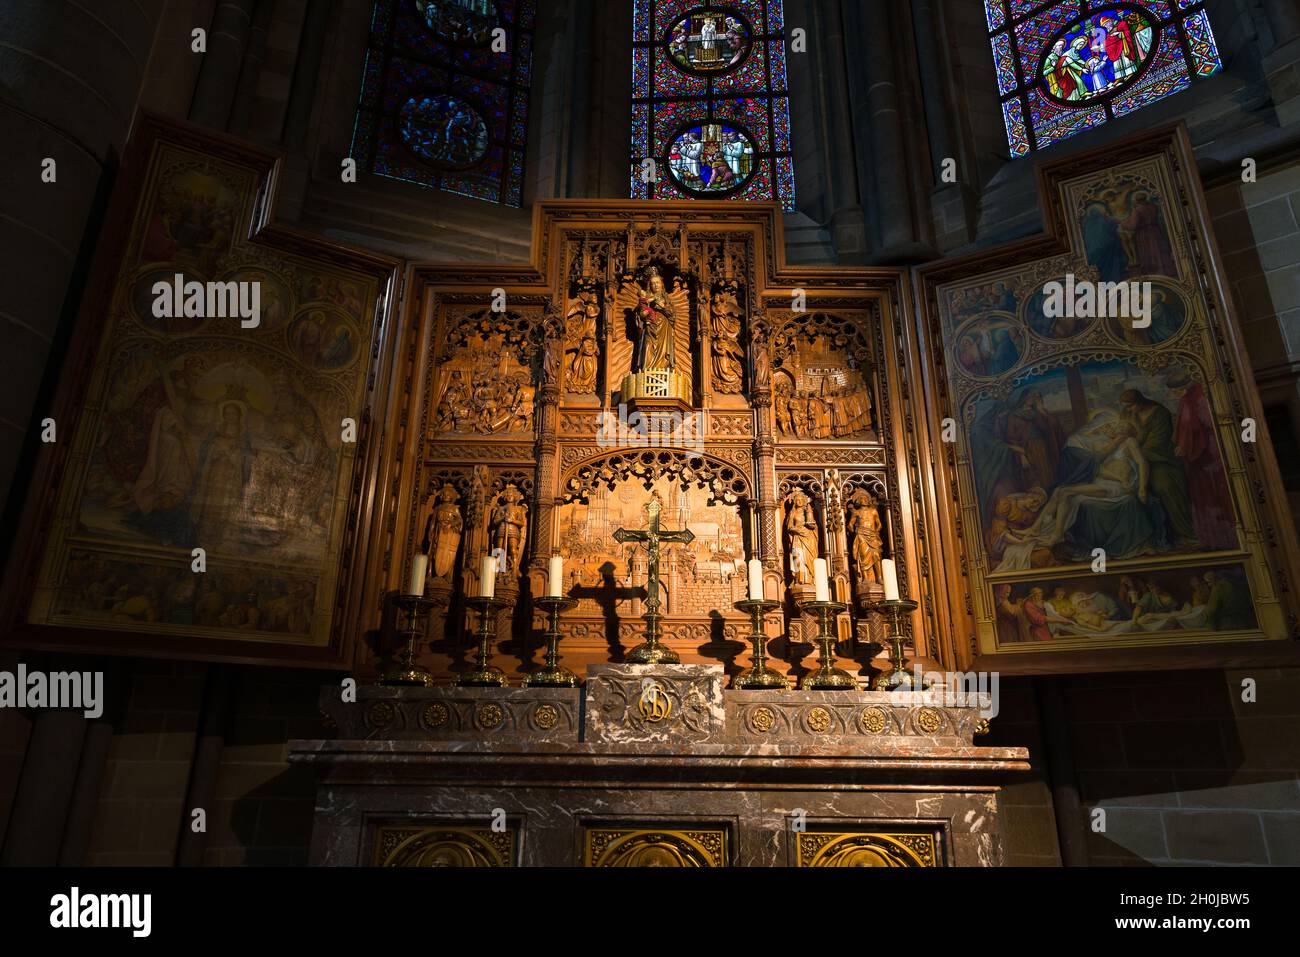 Détails de l'autel dans la cathédrale Saint-Martin d'Ypres, après la première Guerre mondiale restaurée à sa beauté médiévale. Banque D'Images